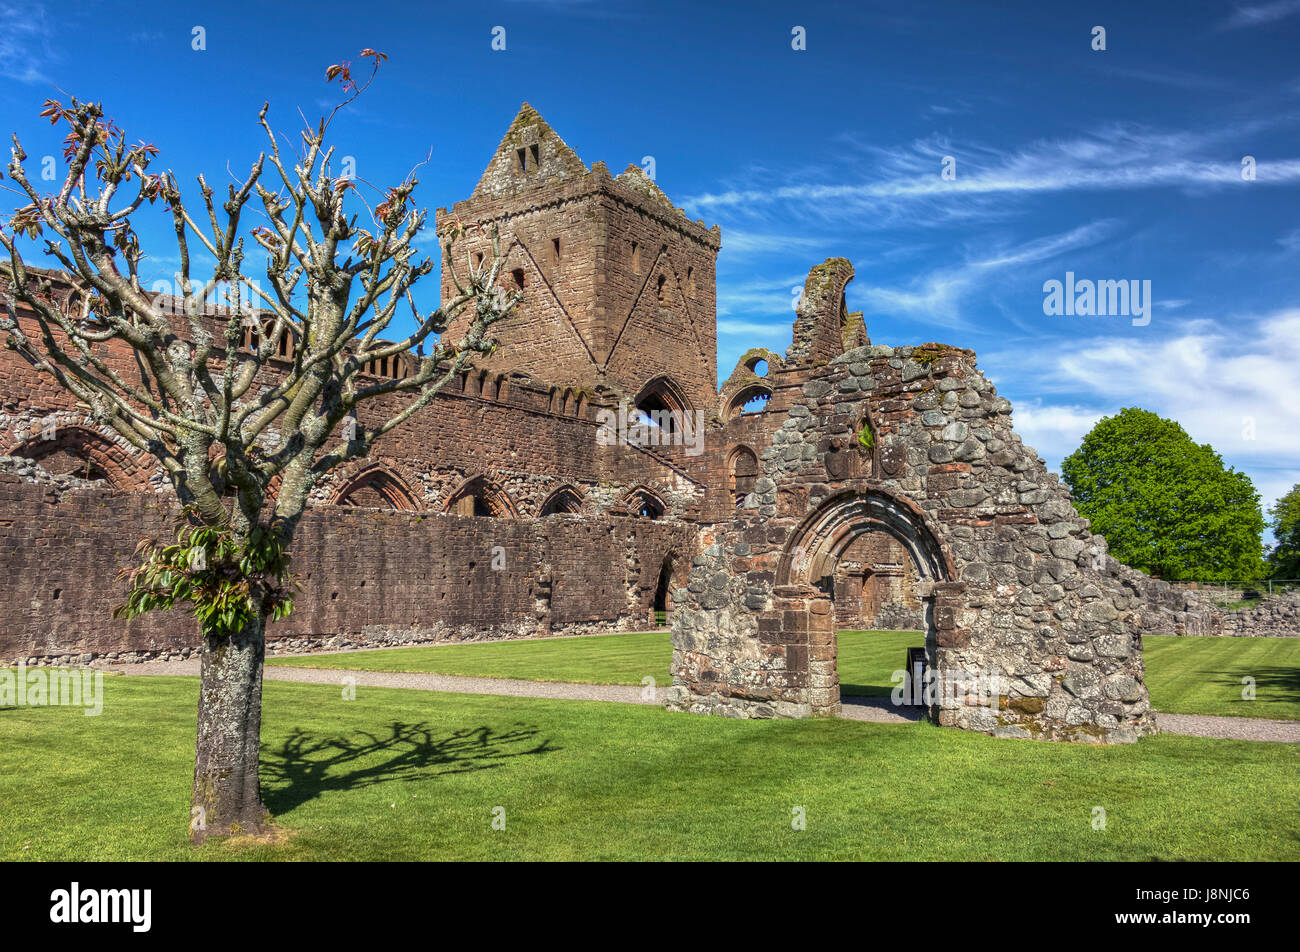 Siglo XIII Sweetheart Abbey propiedad de entorno histórico de Escocia y abierto al público en Nueva Abadía, Dumfries y Galloway, Escocia. Foto de stock